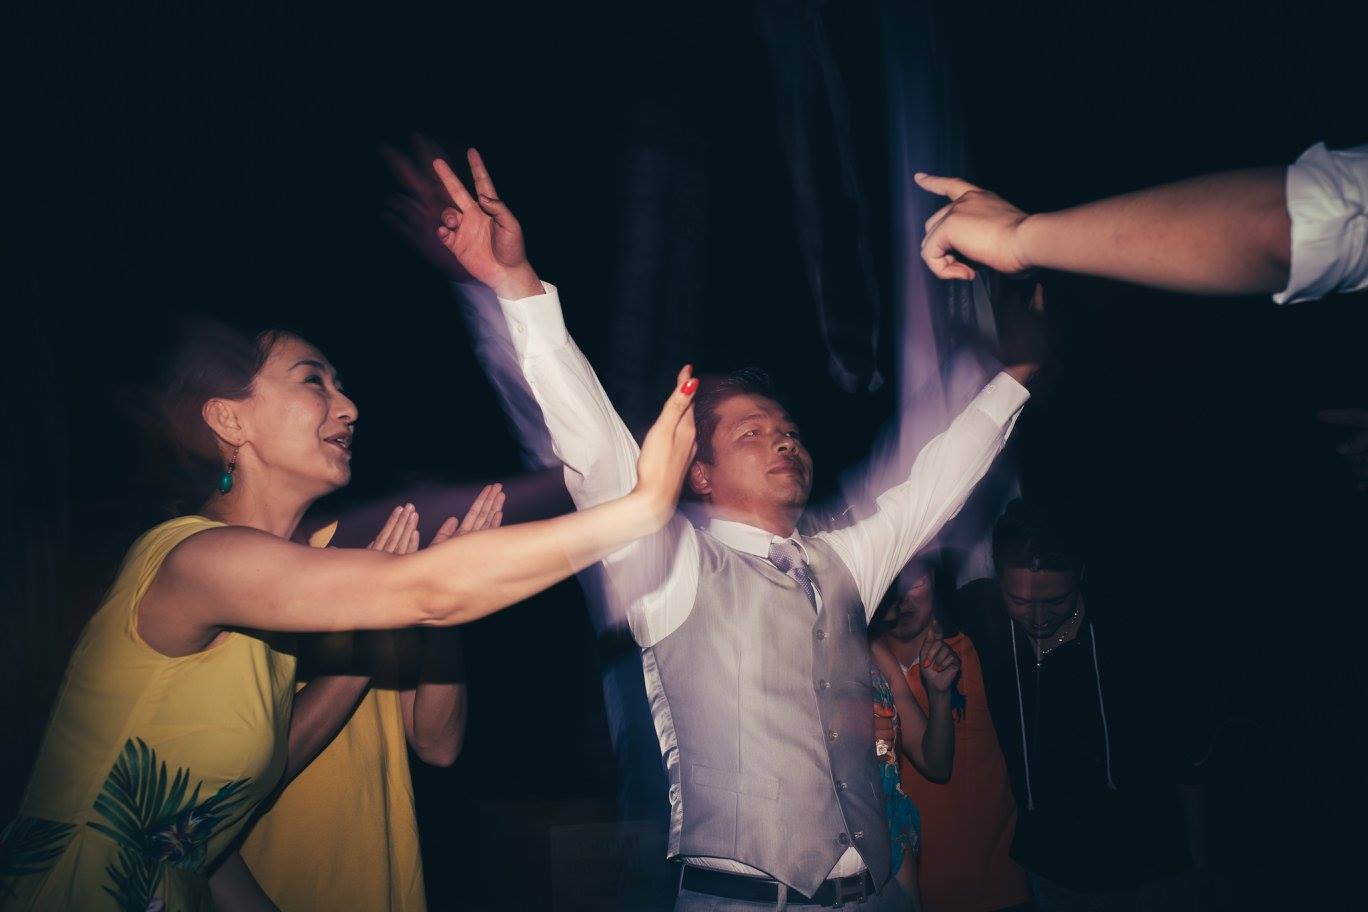 雷竞技raybet入口进入巴厘岛婚礼摄影师米歇尔·帕斯特尔雷竞技电竞好用